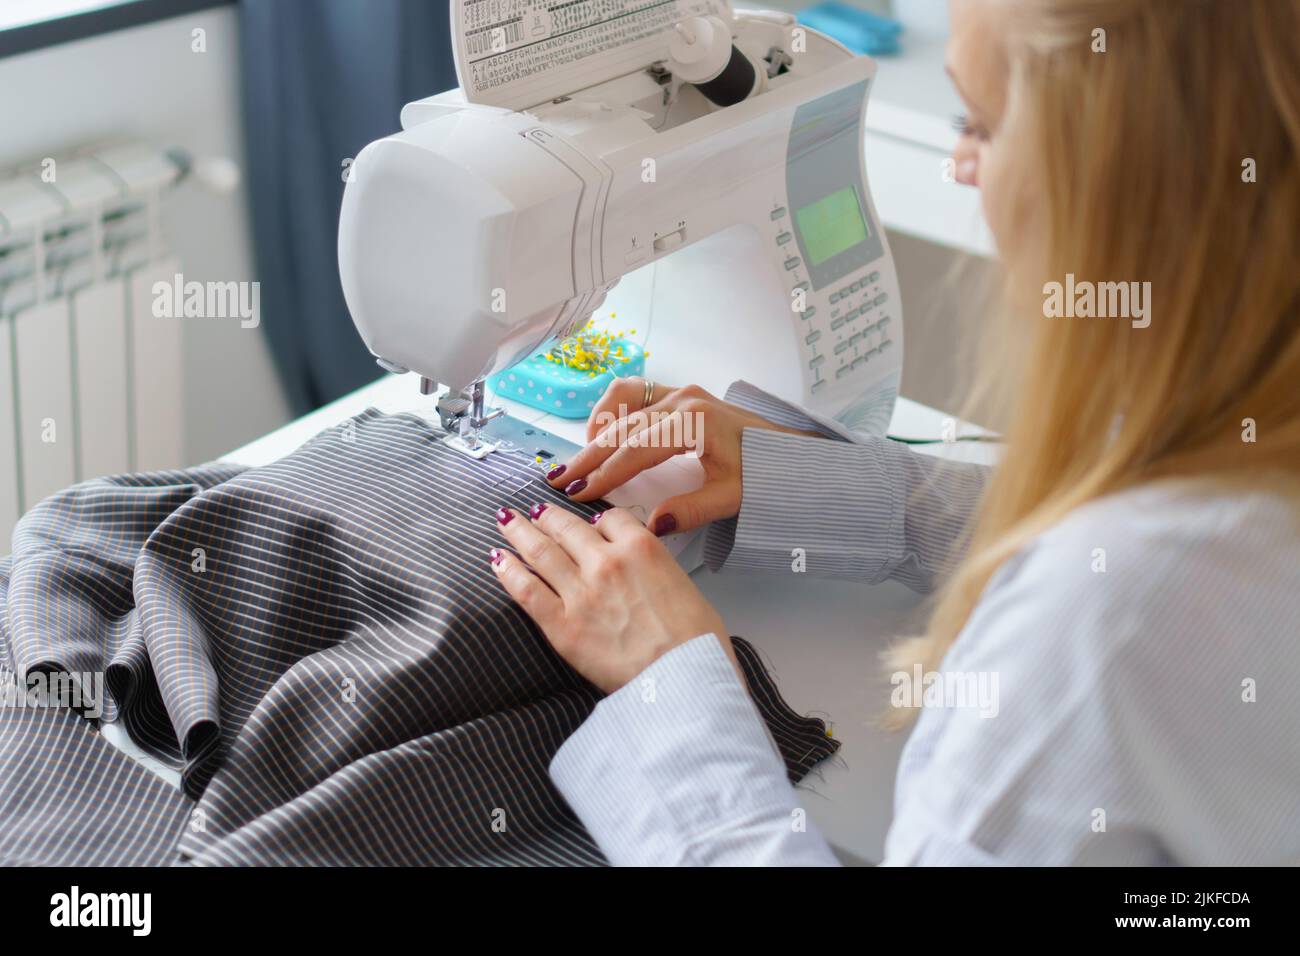 La donna di seamstress lavora sulla macchina da cucire. Le mani del dressaker lavorano alla fabbrica di cucire Foto Stock